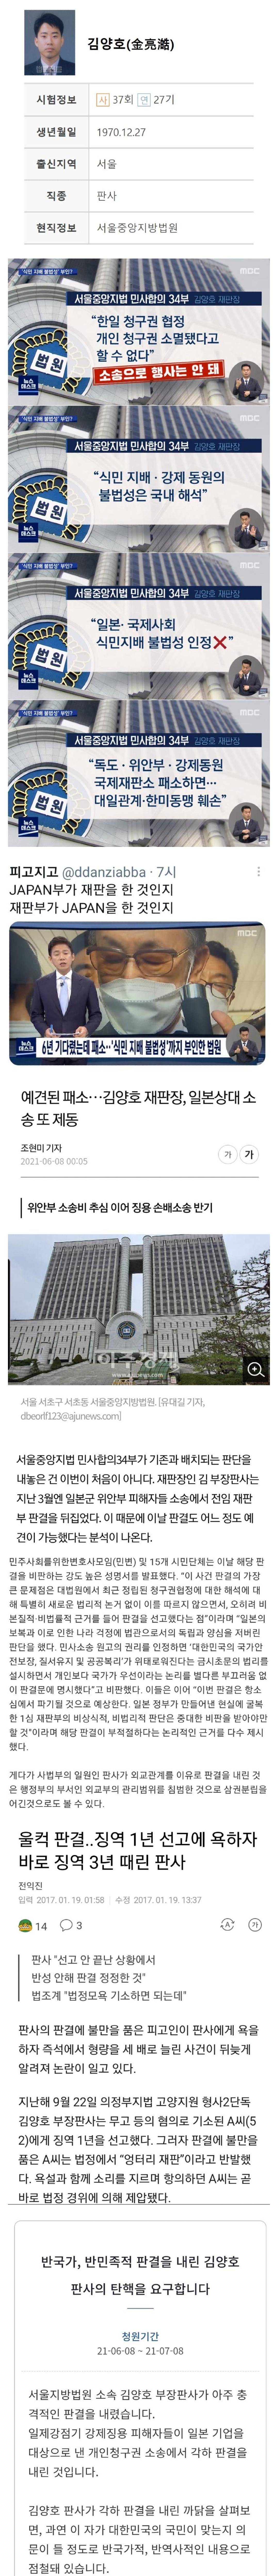 김양호 탄핵 청원